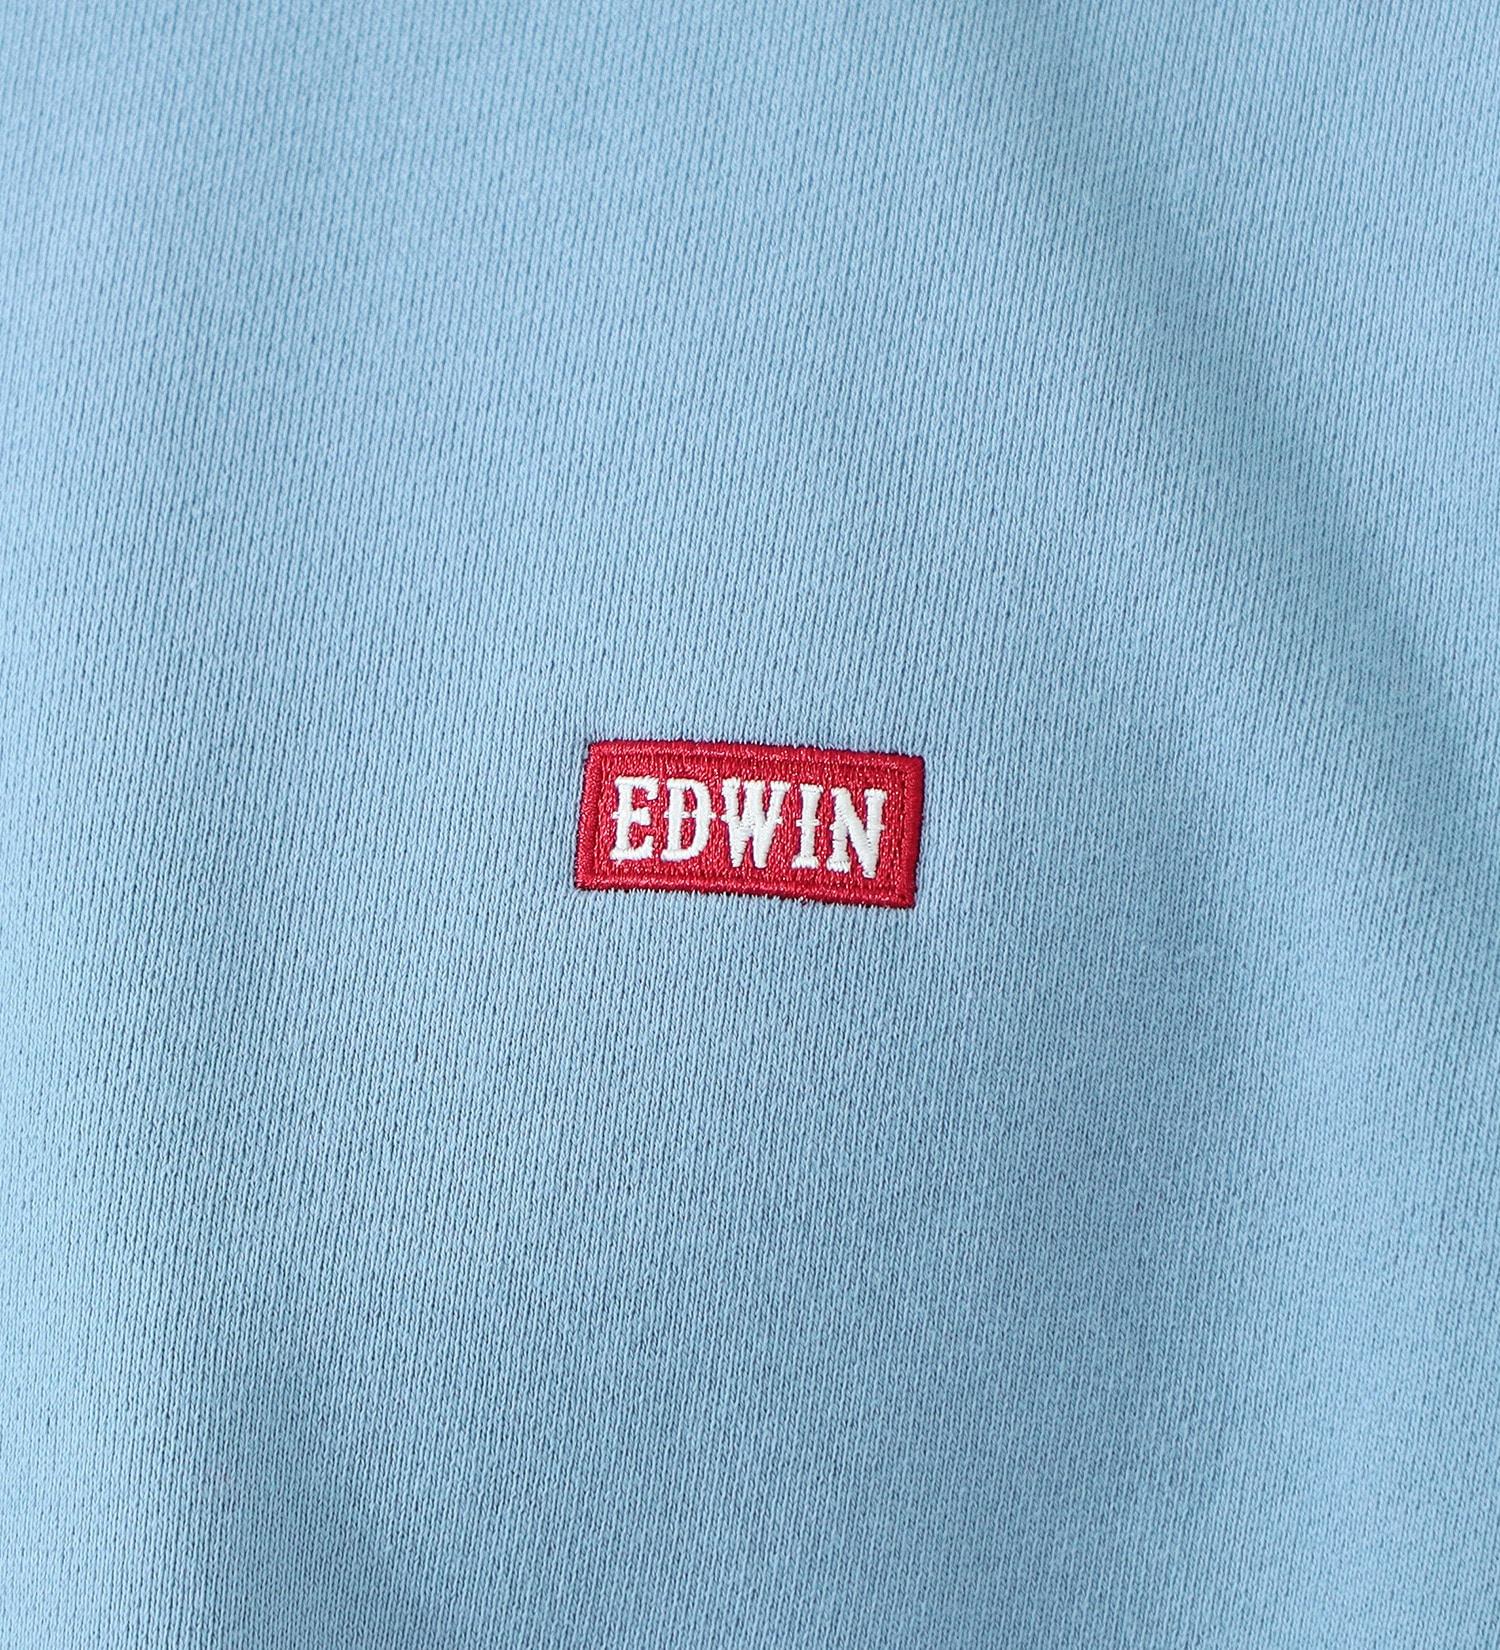 EDWIN(エドウイン)の【SALE】ボックスロゴスウェット【アウトレット店舗・WEB限定】|トップス/スウェット/メンズ|ブルー